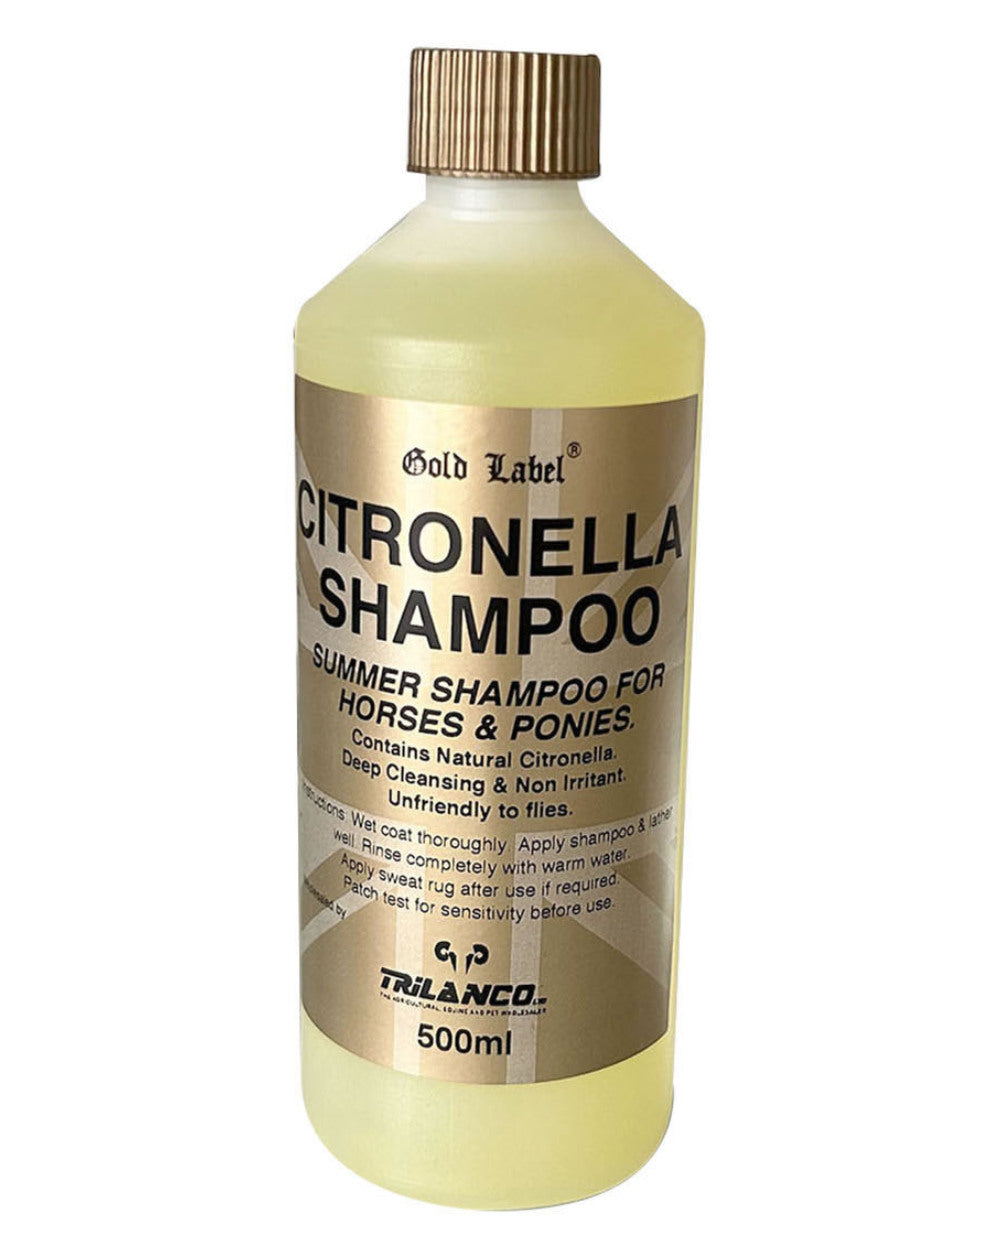 Gold Label Citronella Shampoo On A White Background